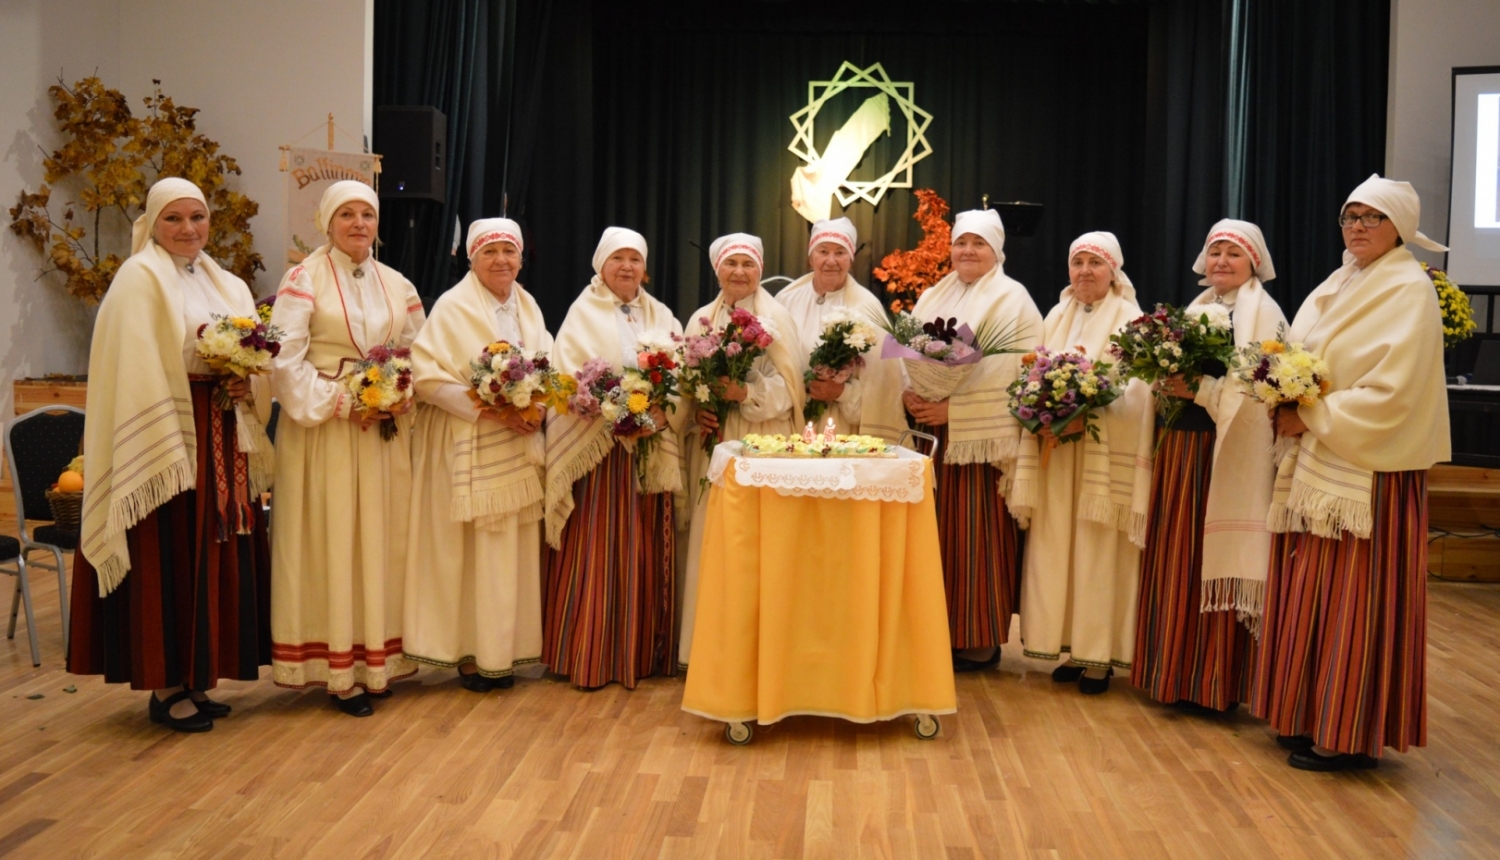 Baltinavas etnogrāfiskā ansambļa dziedātās latgaliešu tautasdziesmas apkopotas krājumā “Dzīšmu skreine”